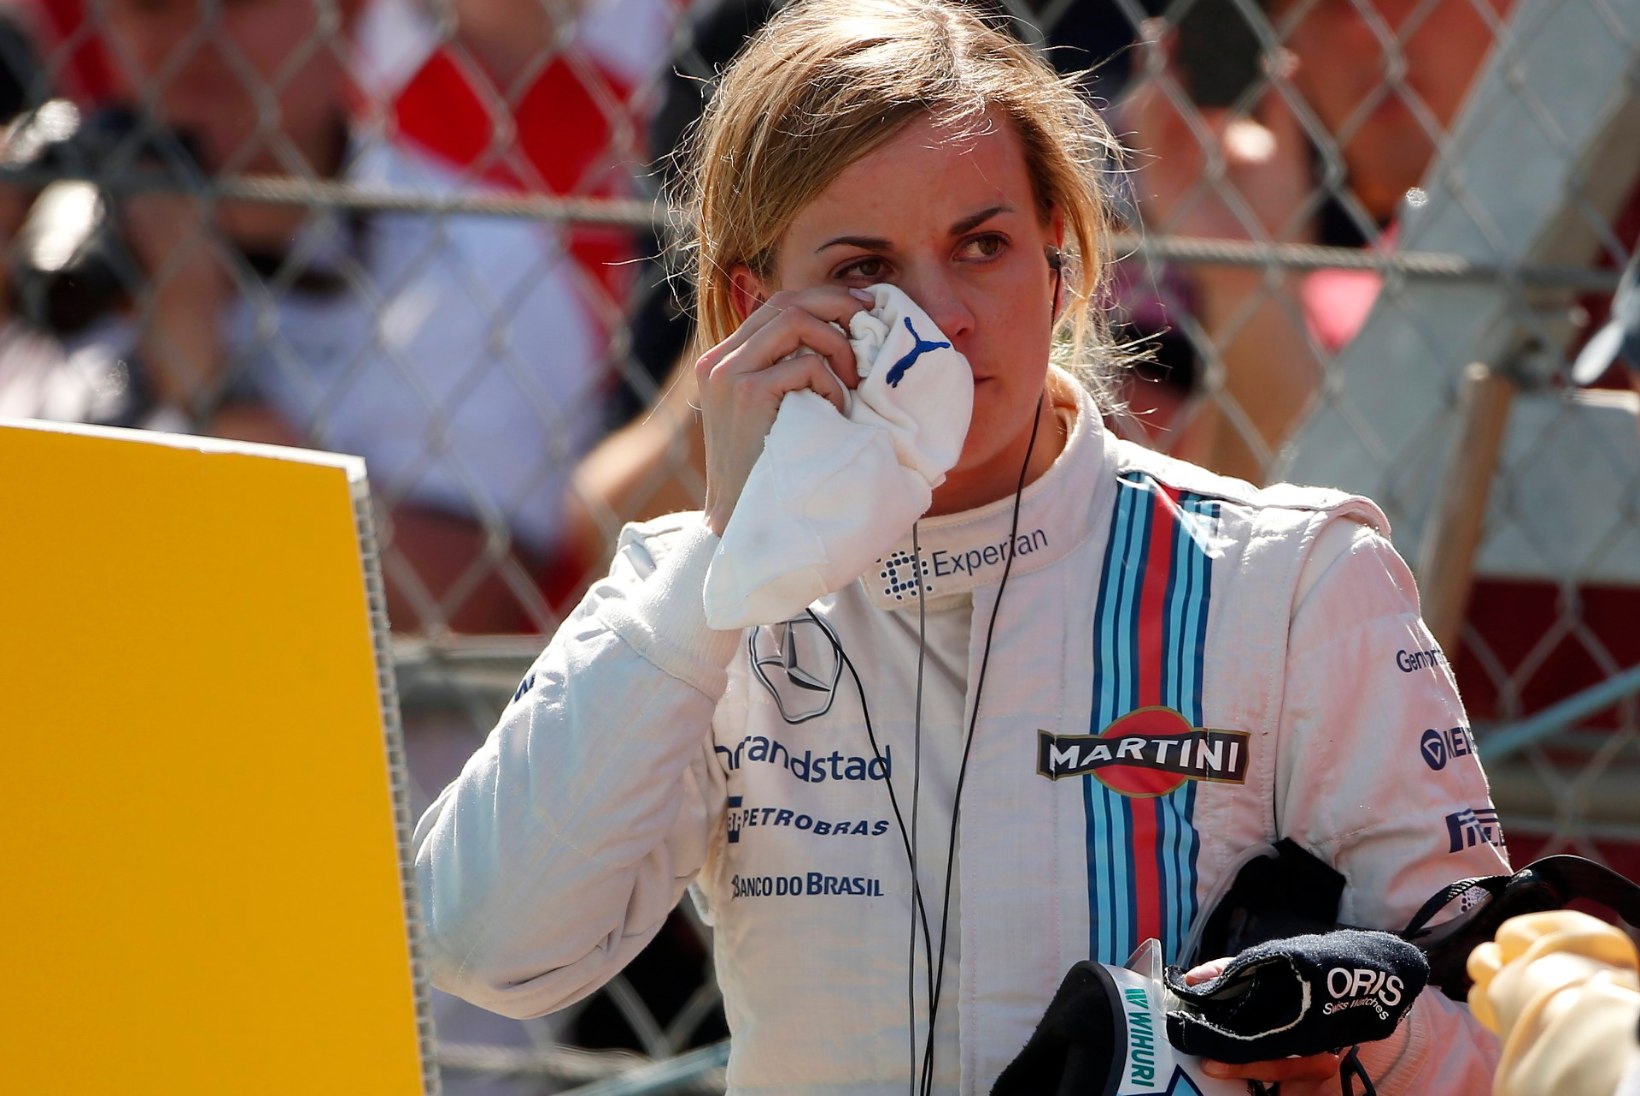 F1-sarja lävele jõudnud naispiloot annab alla ja riputab kiivri varna